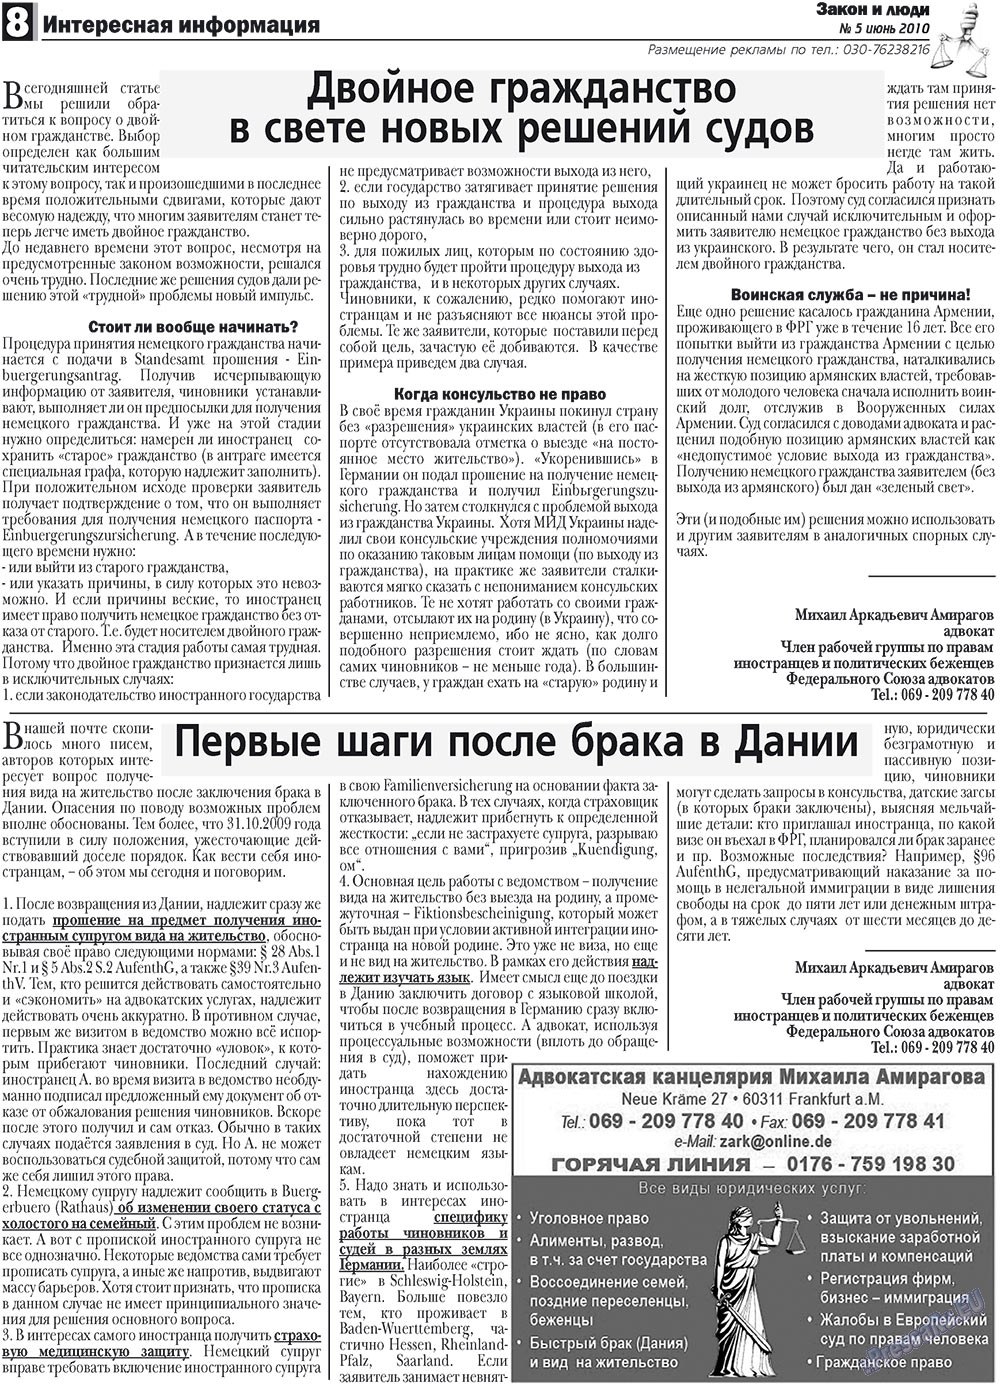 Закон и люди, газета. 2010 №5 стр.8